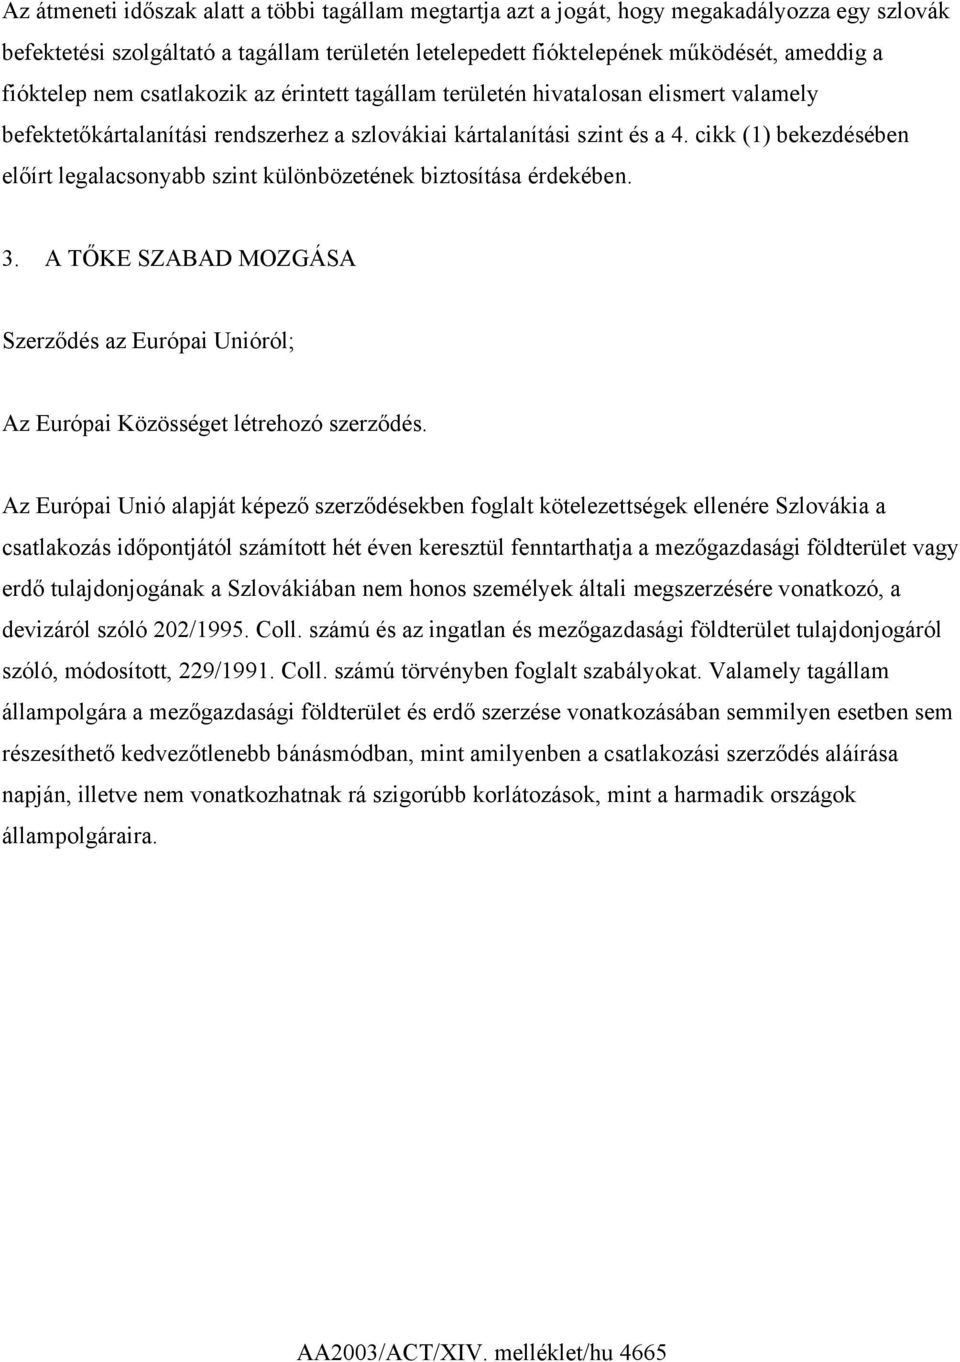 cikk (1) bekezdésében előírt legalacsonyabb szint különbözetének biztosítása érdekében. 3. A TŐKE SZABAD MOZGÁSA Szerződés az Európai Unióról; Az Európai Közösséget létrehozó szerződés.